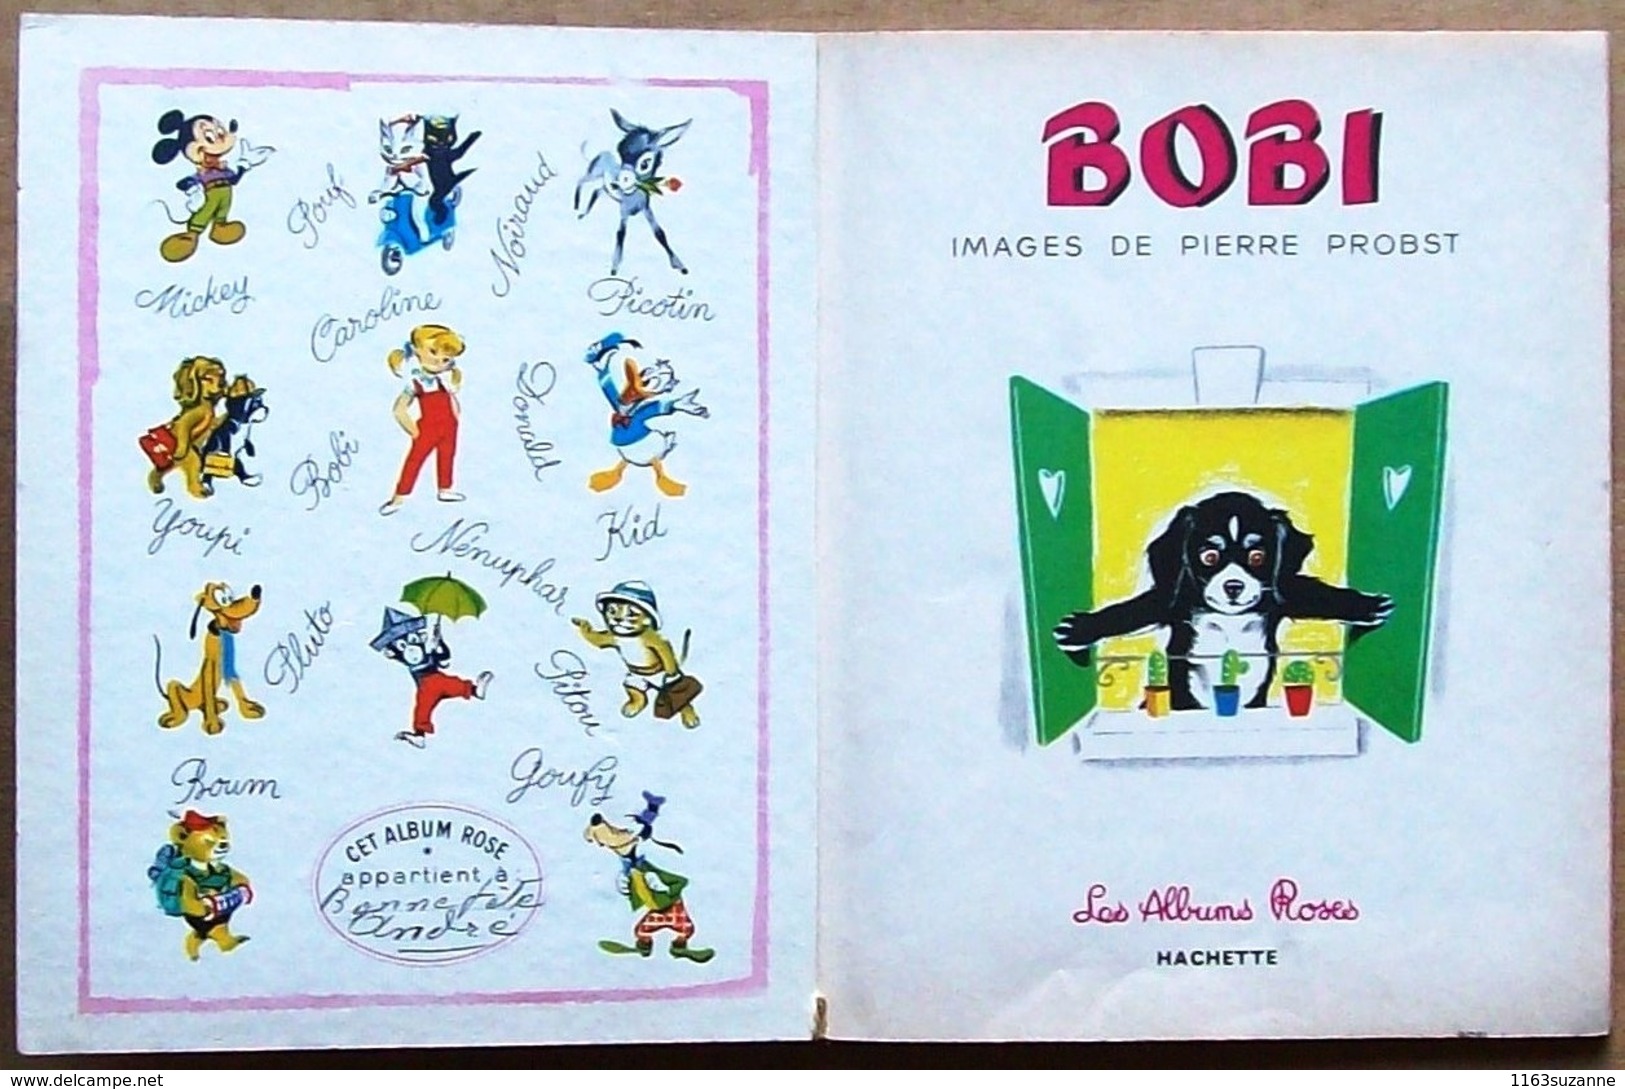 Les Albums Roses, Hachette, 1966 > BOBI, Images De PIERRE PROBST - Hachette